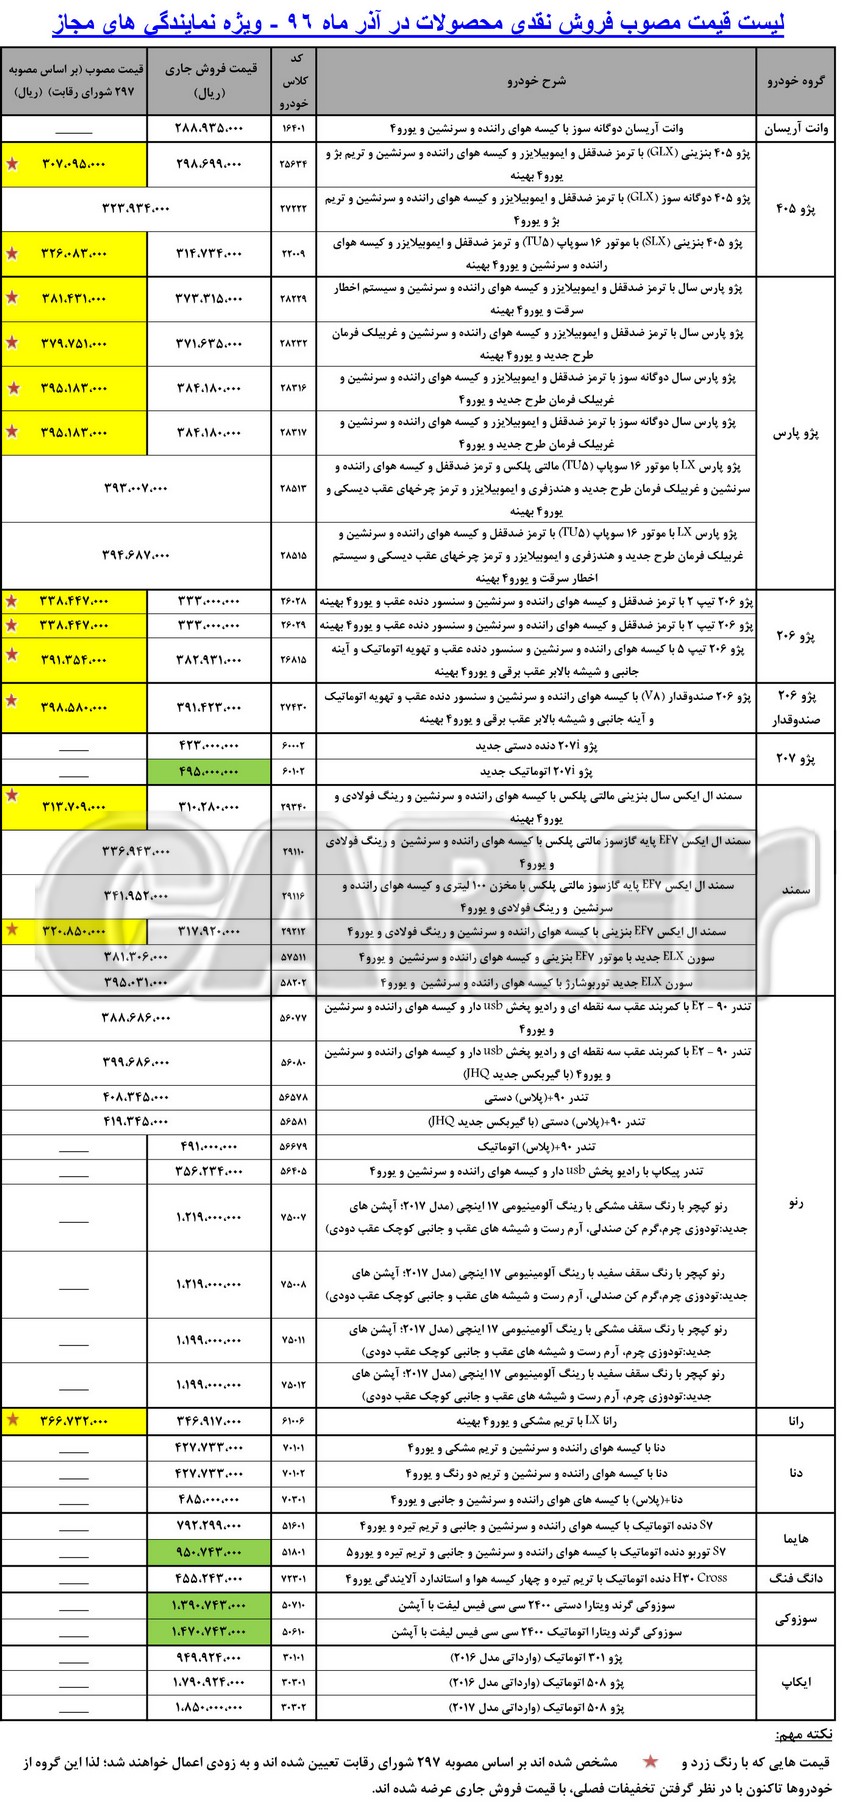  اعلام قیمت جدید پژو 207 اتوماتیک از سوی ایران خودرو  